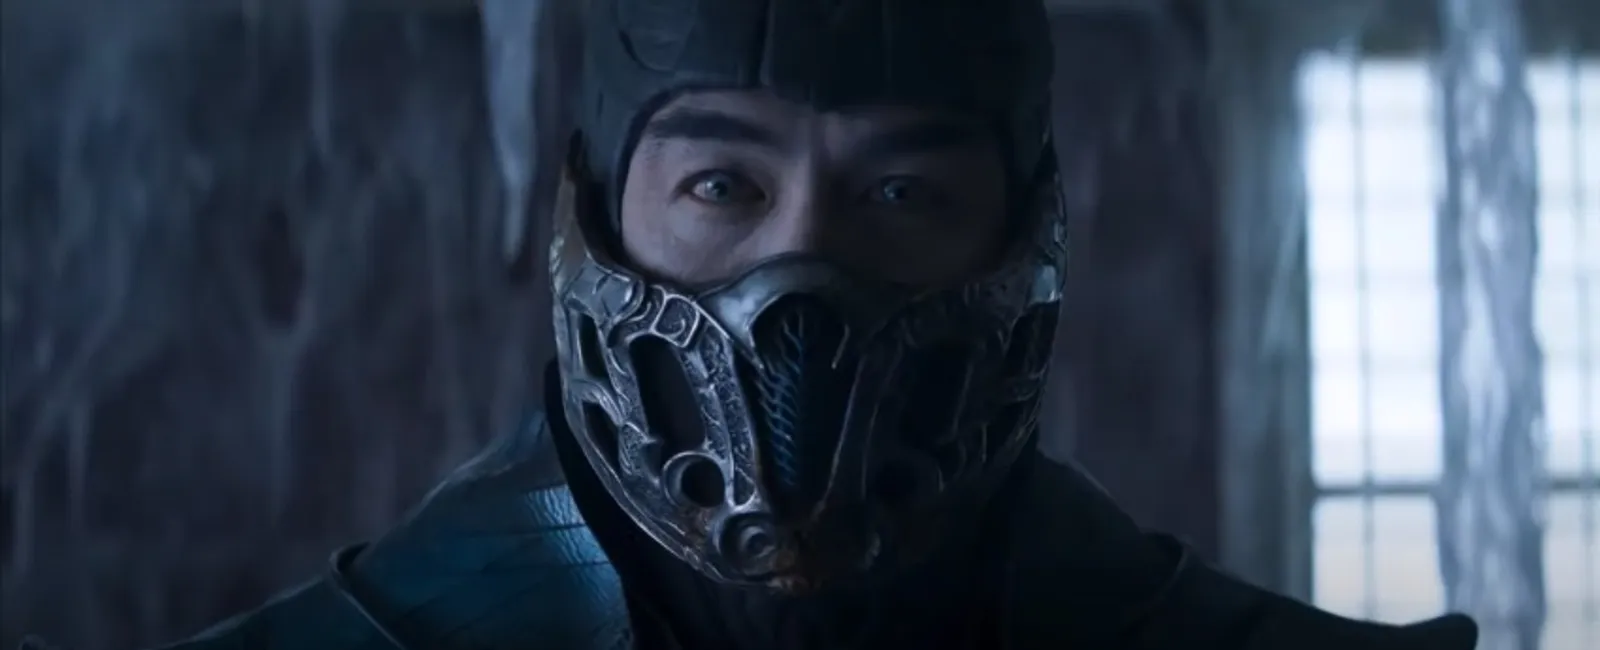 Joe Taslim Tampil Membanggakan di Trailer Perdana 'Mortal Kombat'